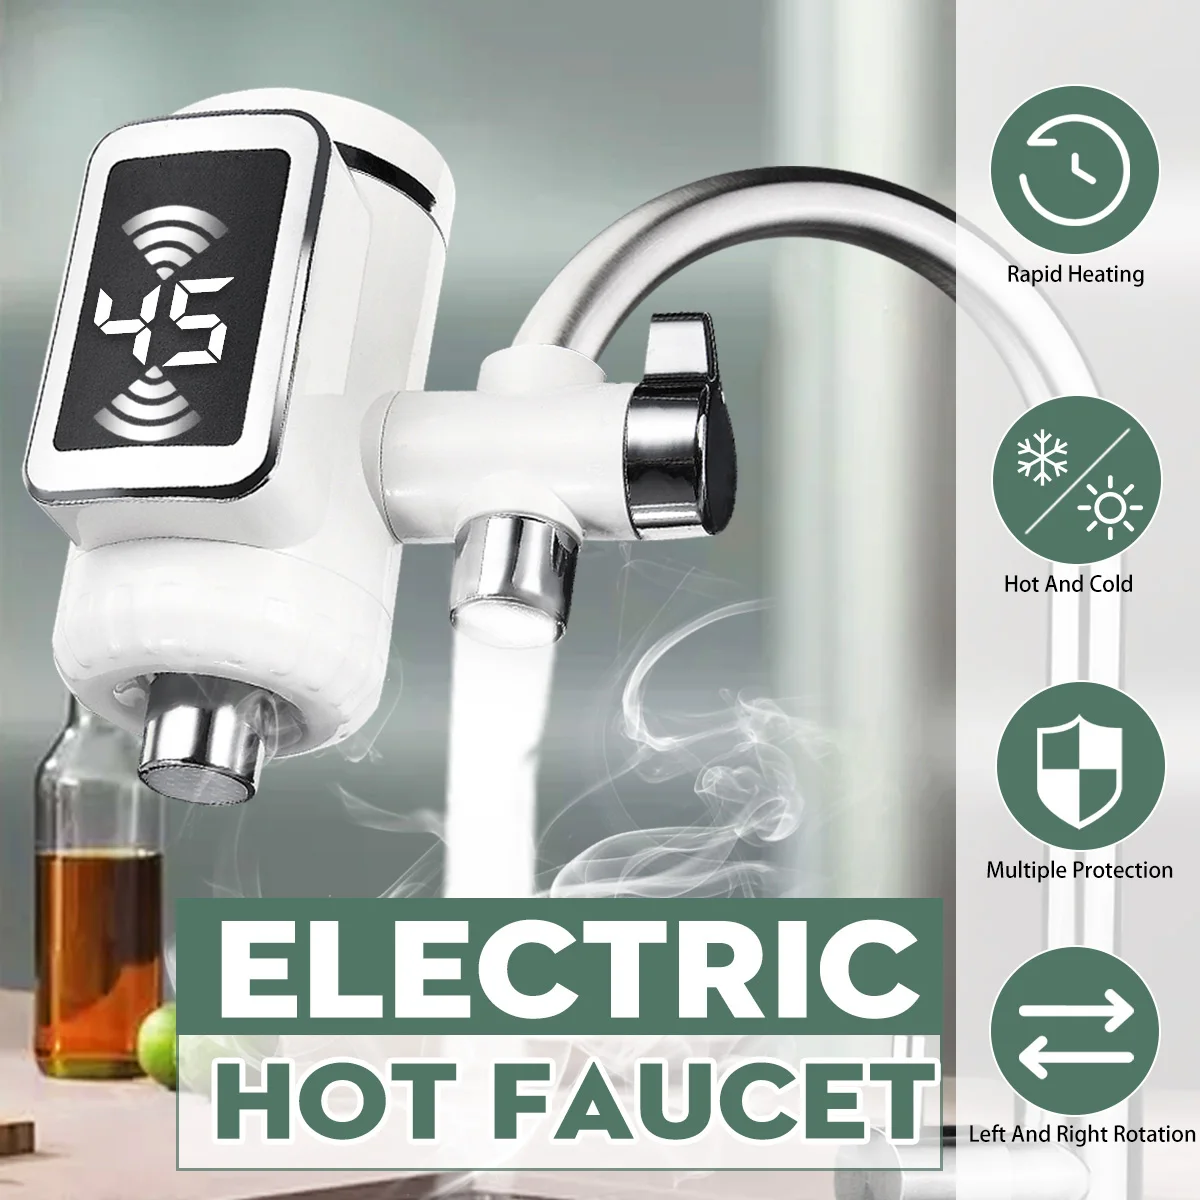 

Электрический проточный водонагреватель для кухни с функциями кран для нагрева, мгновенный нагрев воды, адаптер, без бака